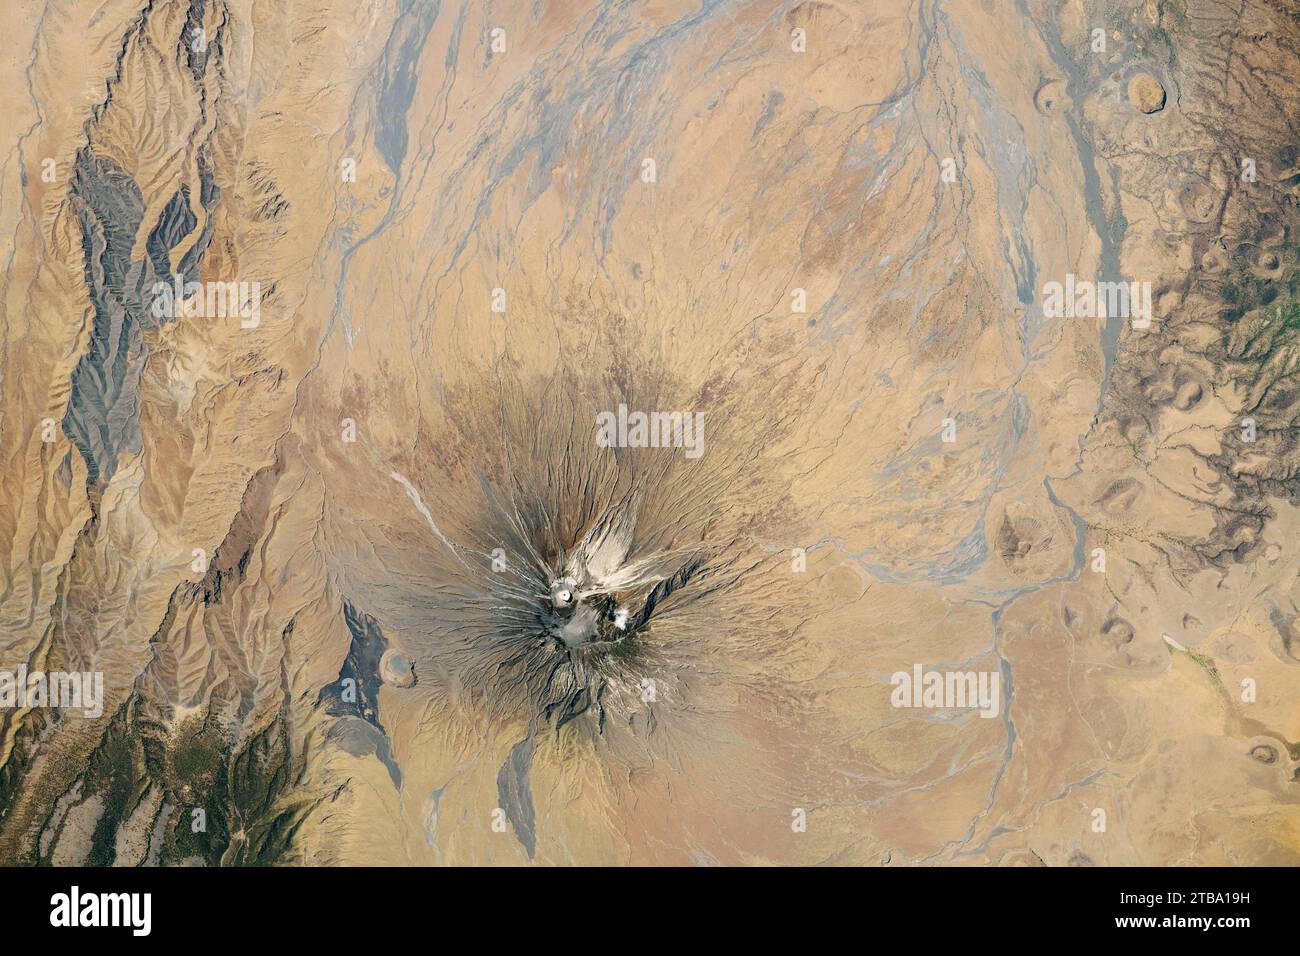 Vista dallo spazio di Ol Doinyo Lengai, uno stratovulcano in Tanzania. Foto Stock